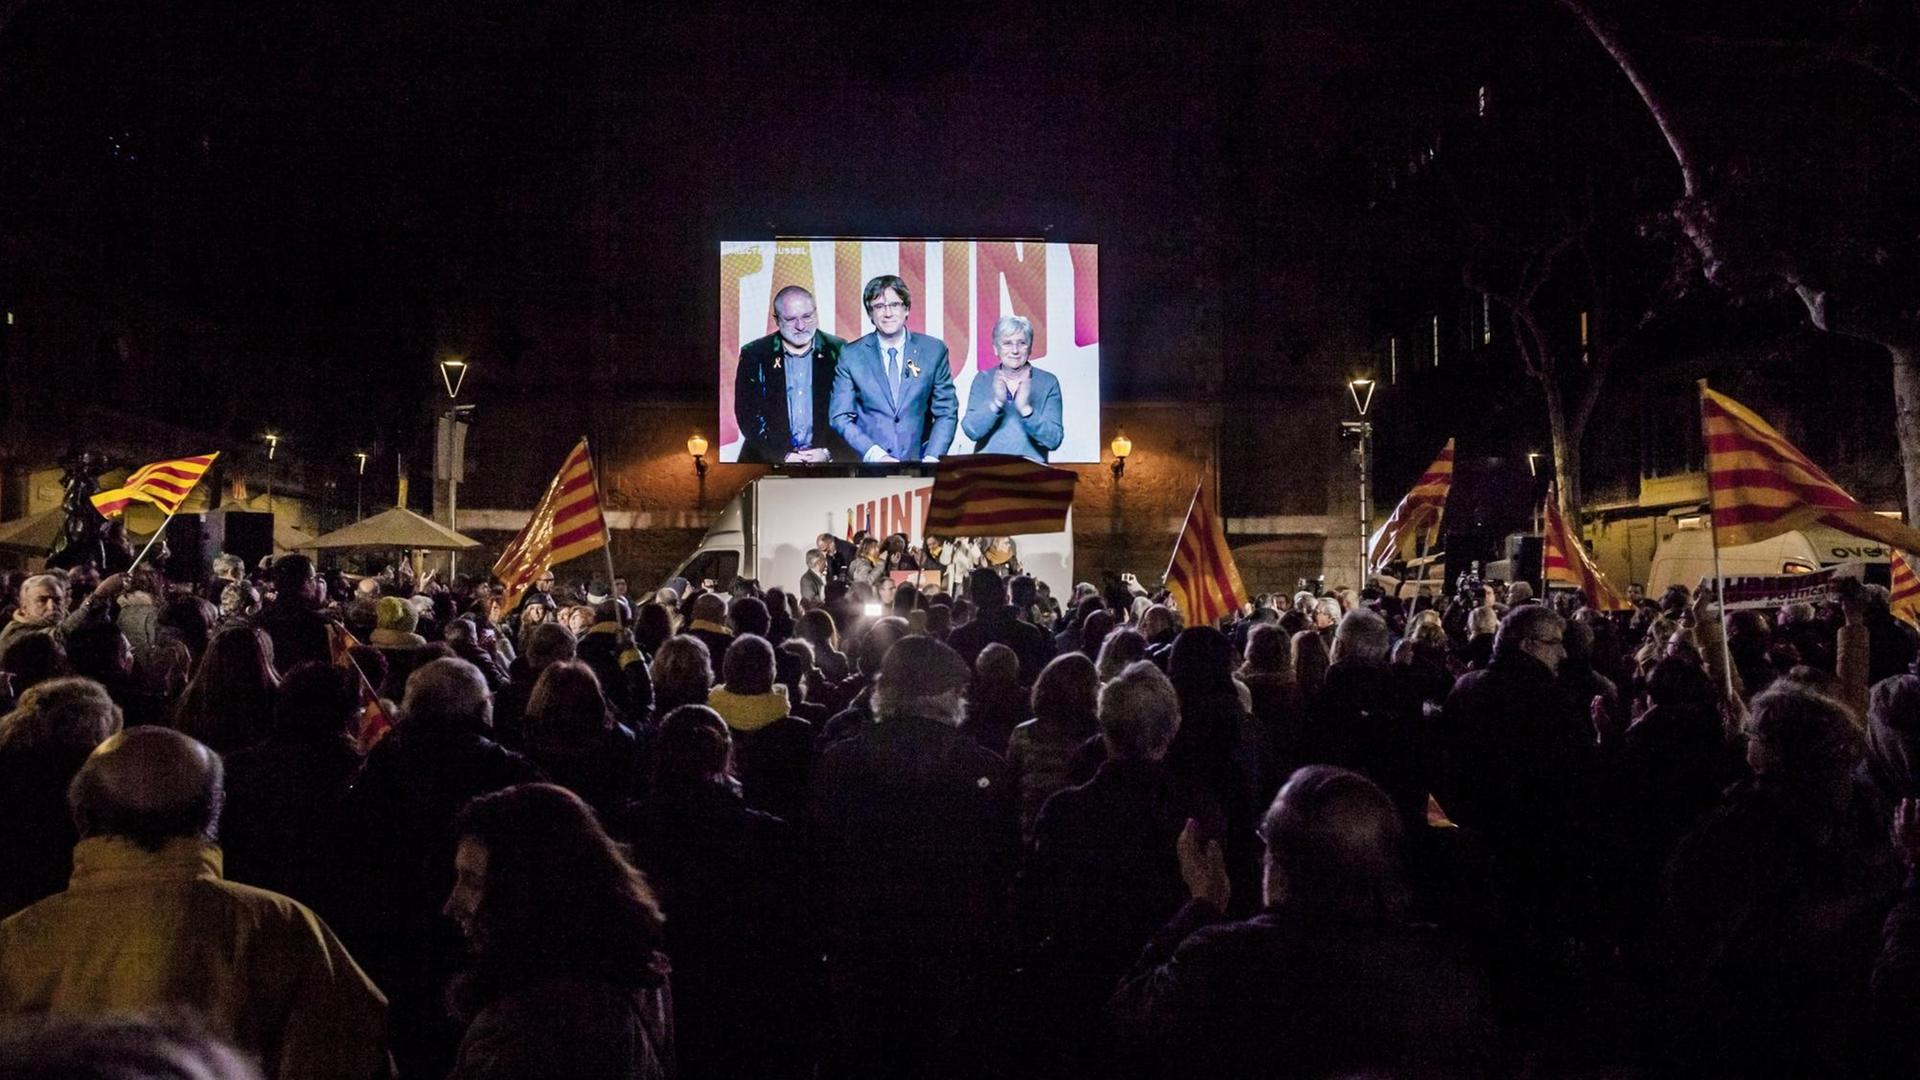 Der abgesetzte katalanische Regierungschef Carles Puigdemont ist auf einer Leinwand auf einer Kundgebung in Barcelona zu sehen. Er wurde zugeschaltet aus Brüssel, wseil in Spanien noch ein Haftbefehl gegen ihn vorliegt.